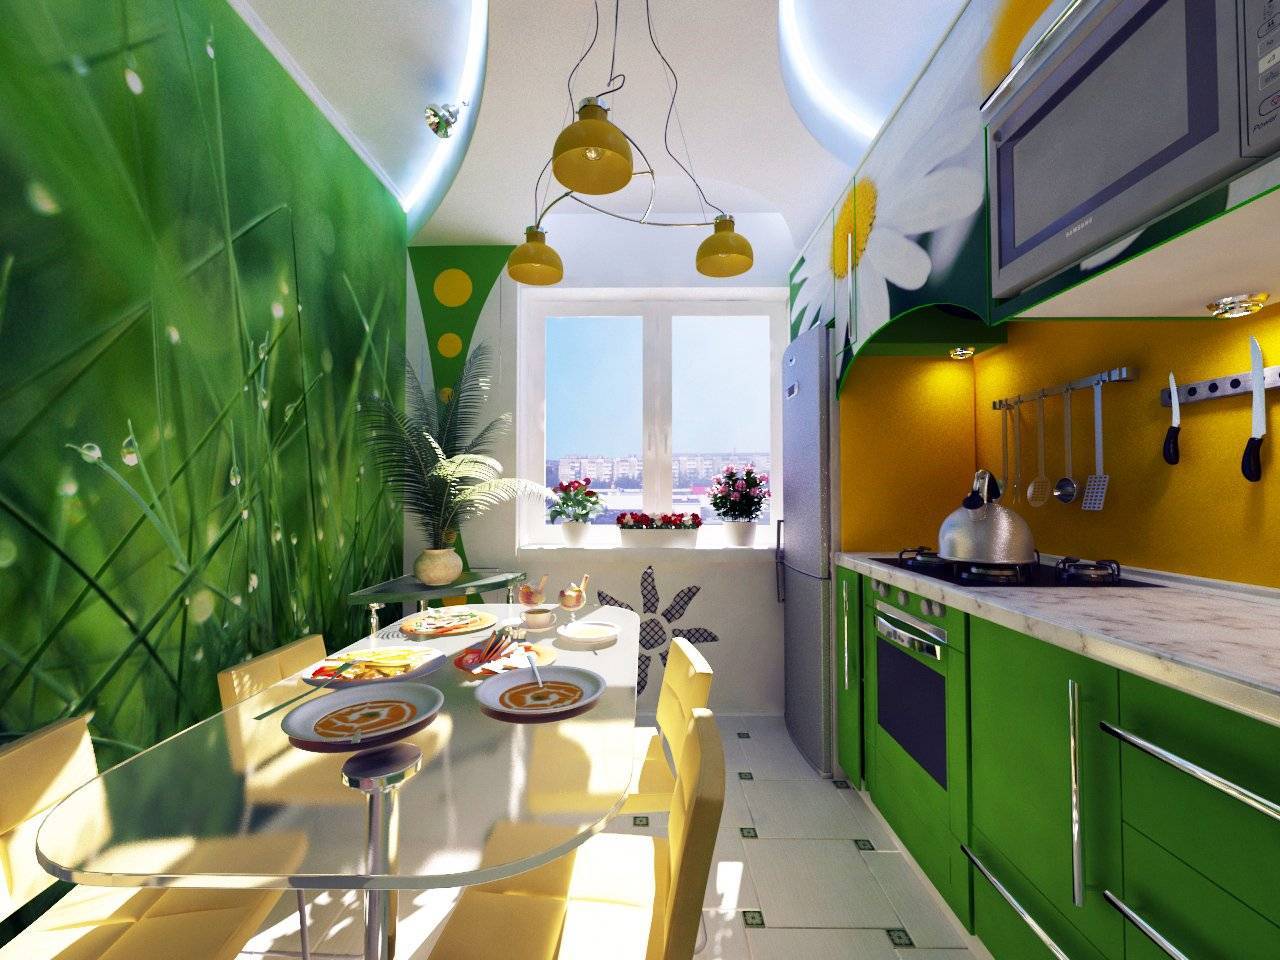 Зеленые обои на кухне. Кухня в зеленых тонах. Красивая яркая кухня. Кухня зеленого цвета в интерьере. Кухня в салатовых тонах.